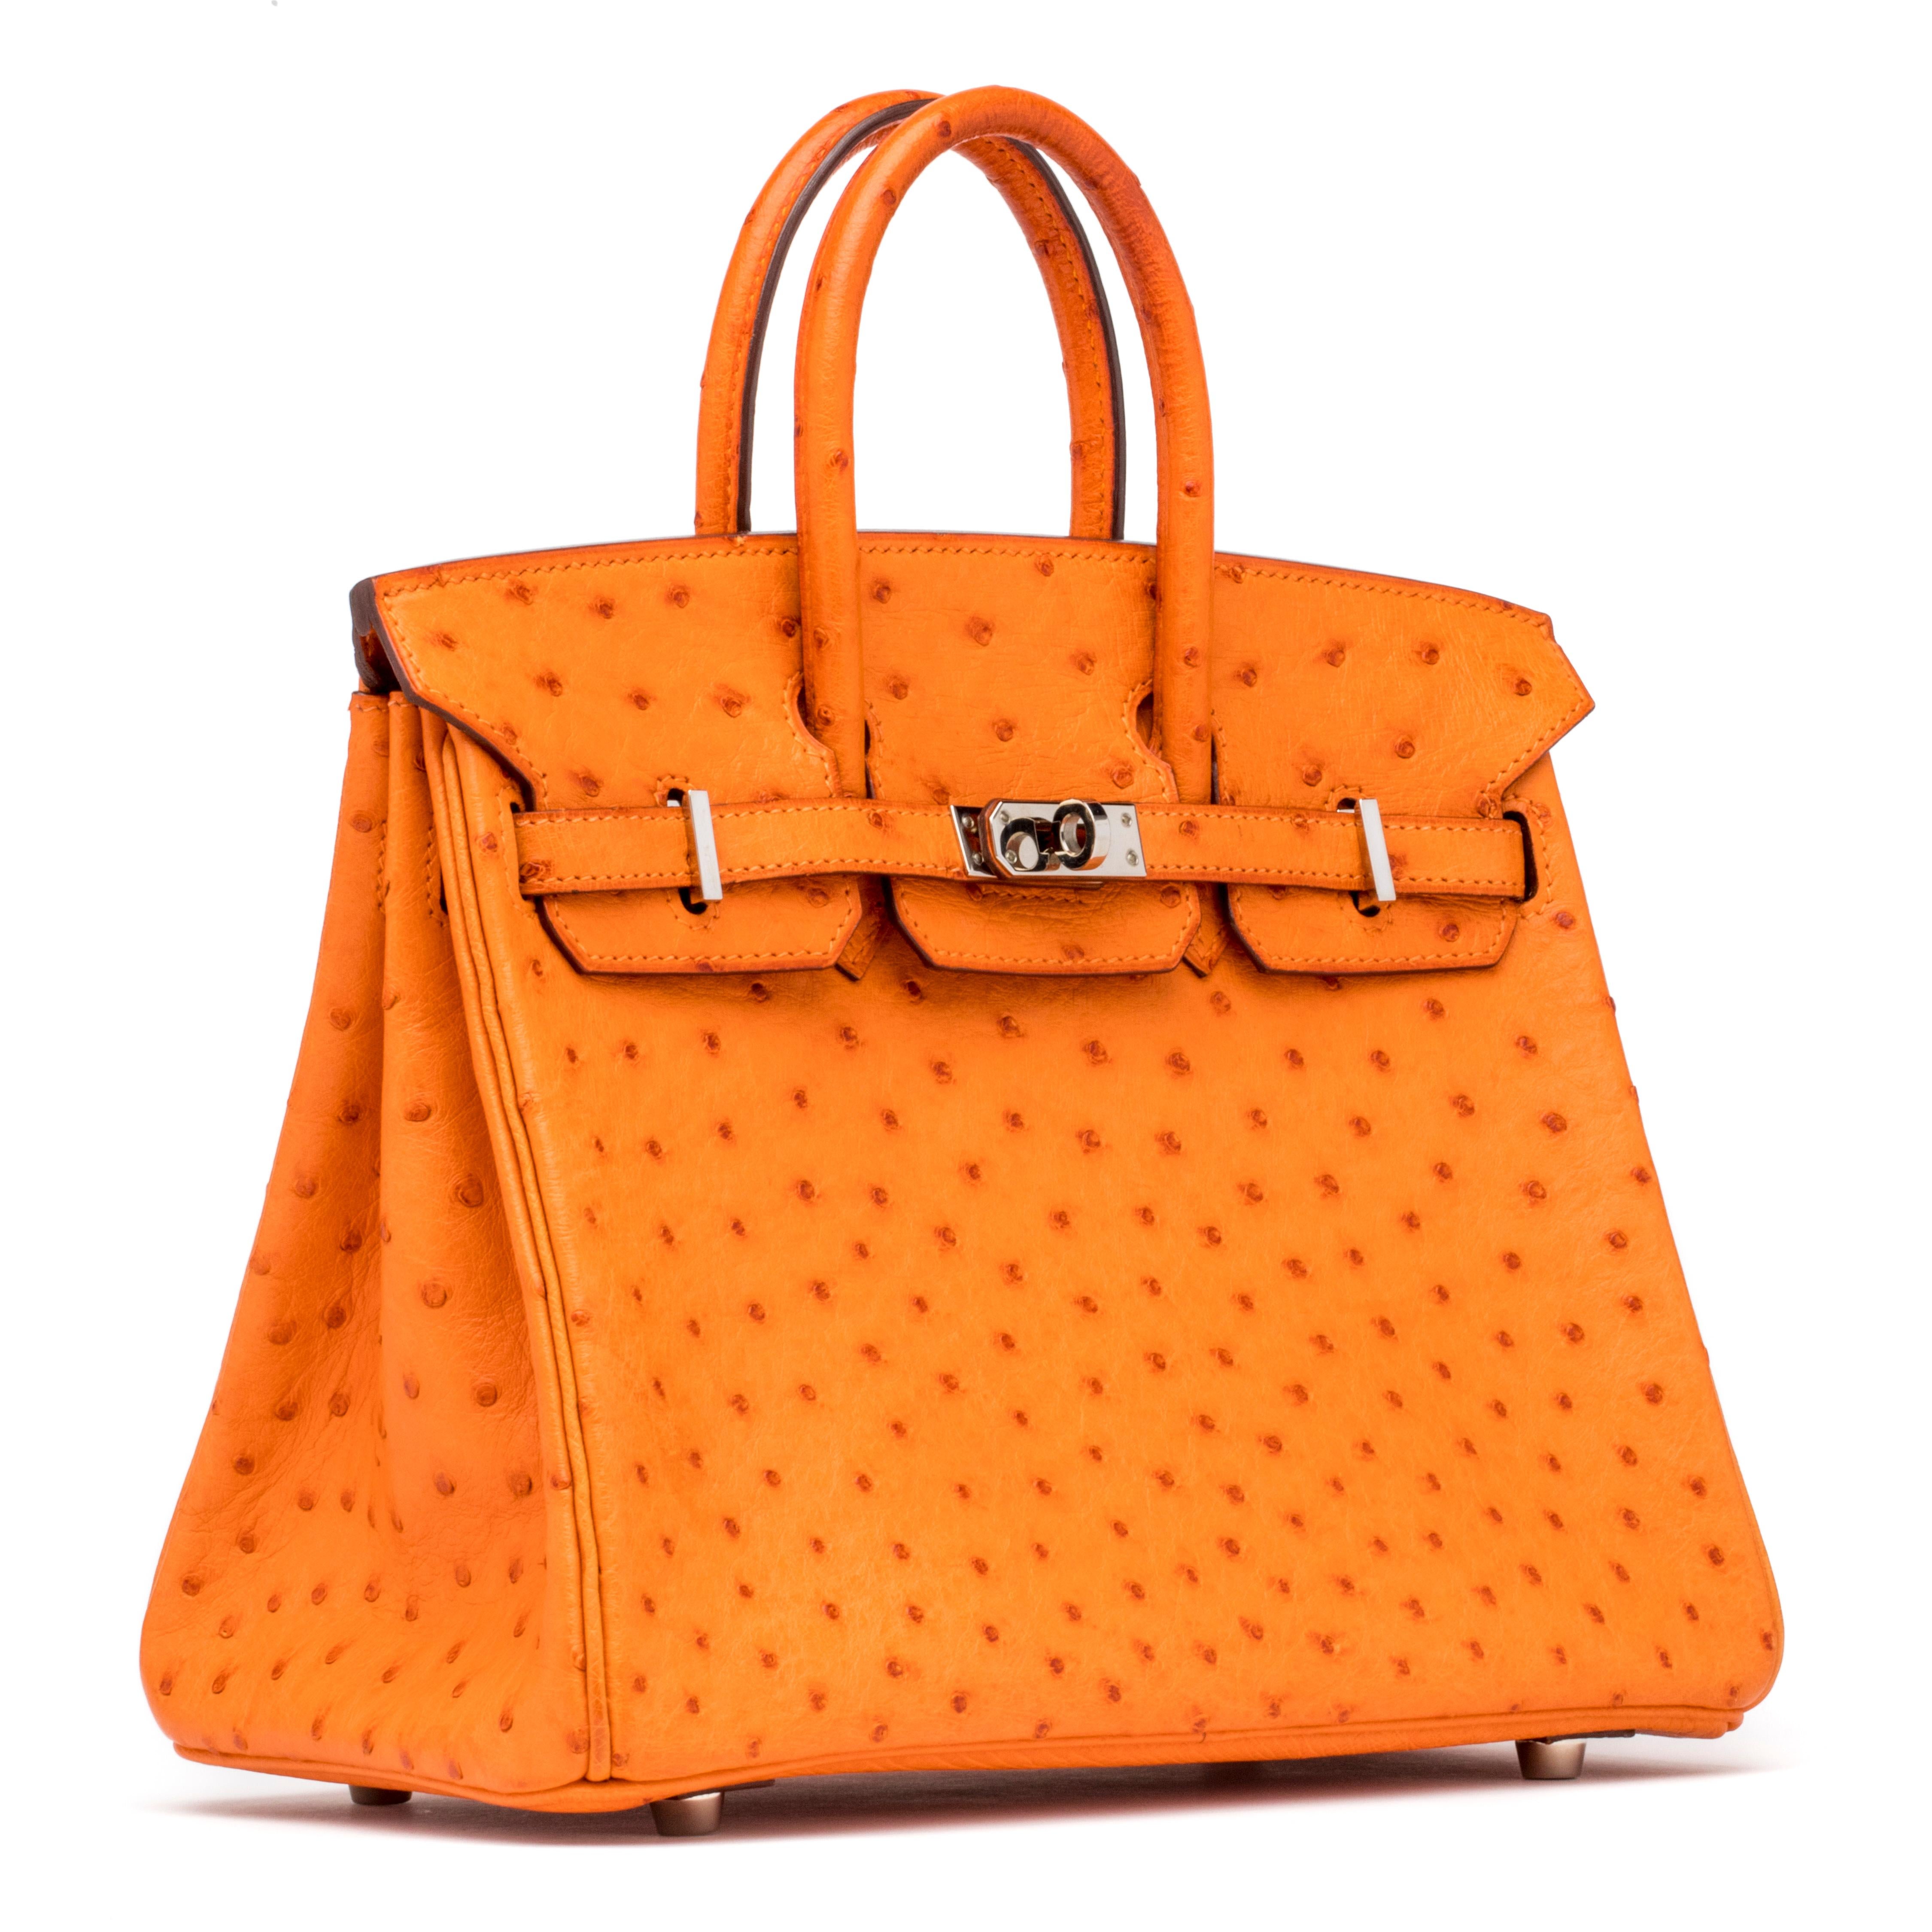 Die Hermés Birkin Bag verkörpert aufgrund ihres tadellosen Designs, ihrer Handwerkskunst und ihrer Bedeutung die Quintessenz von Stil und Luxus. Dennoch ist sie das ikonischste und begehrteste Stück der Hermés Handtaschenkollektion.